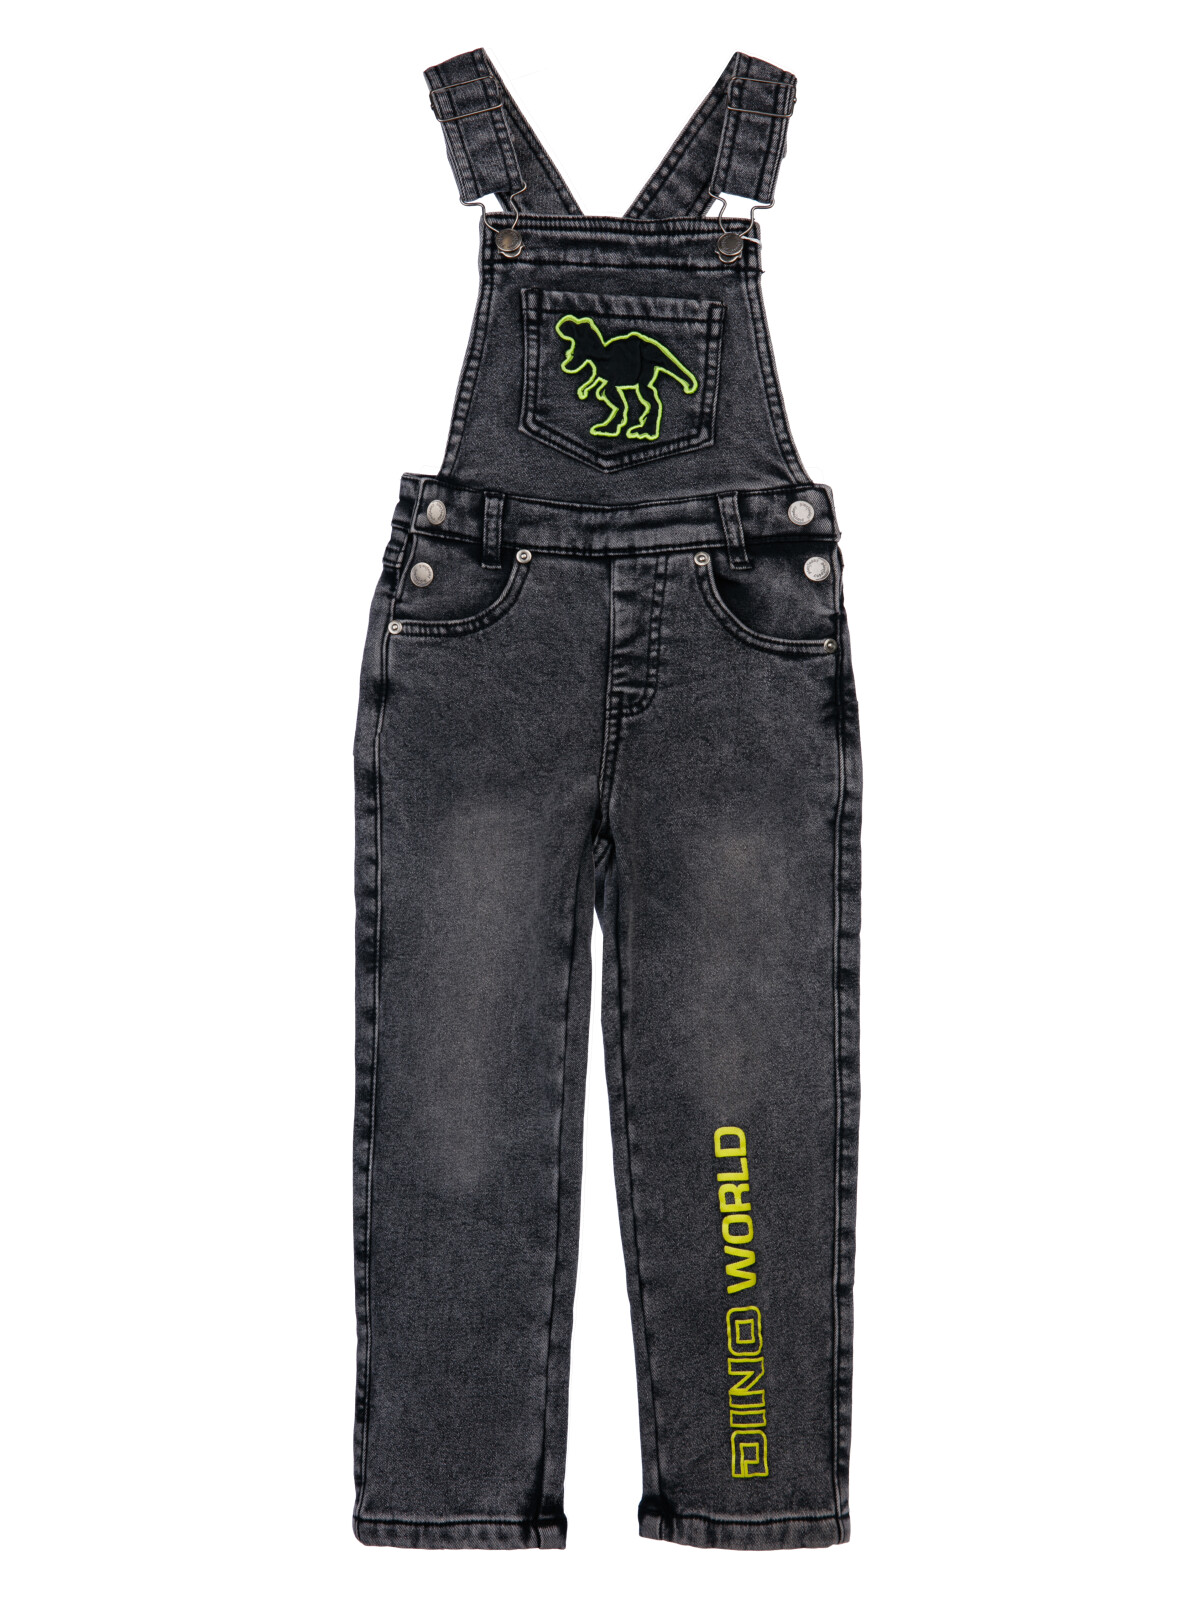 Полукомбинезон текстильный джинсовый утепленный флисом для мальчиков PlayToday, черный, 98 полукомбинезон текстильный джинсовый утепленный флисом для мальчиков